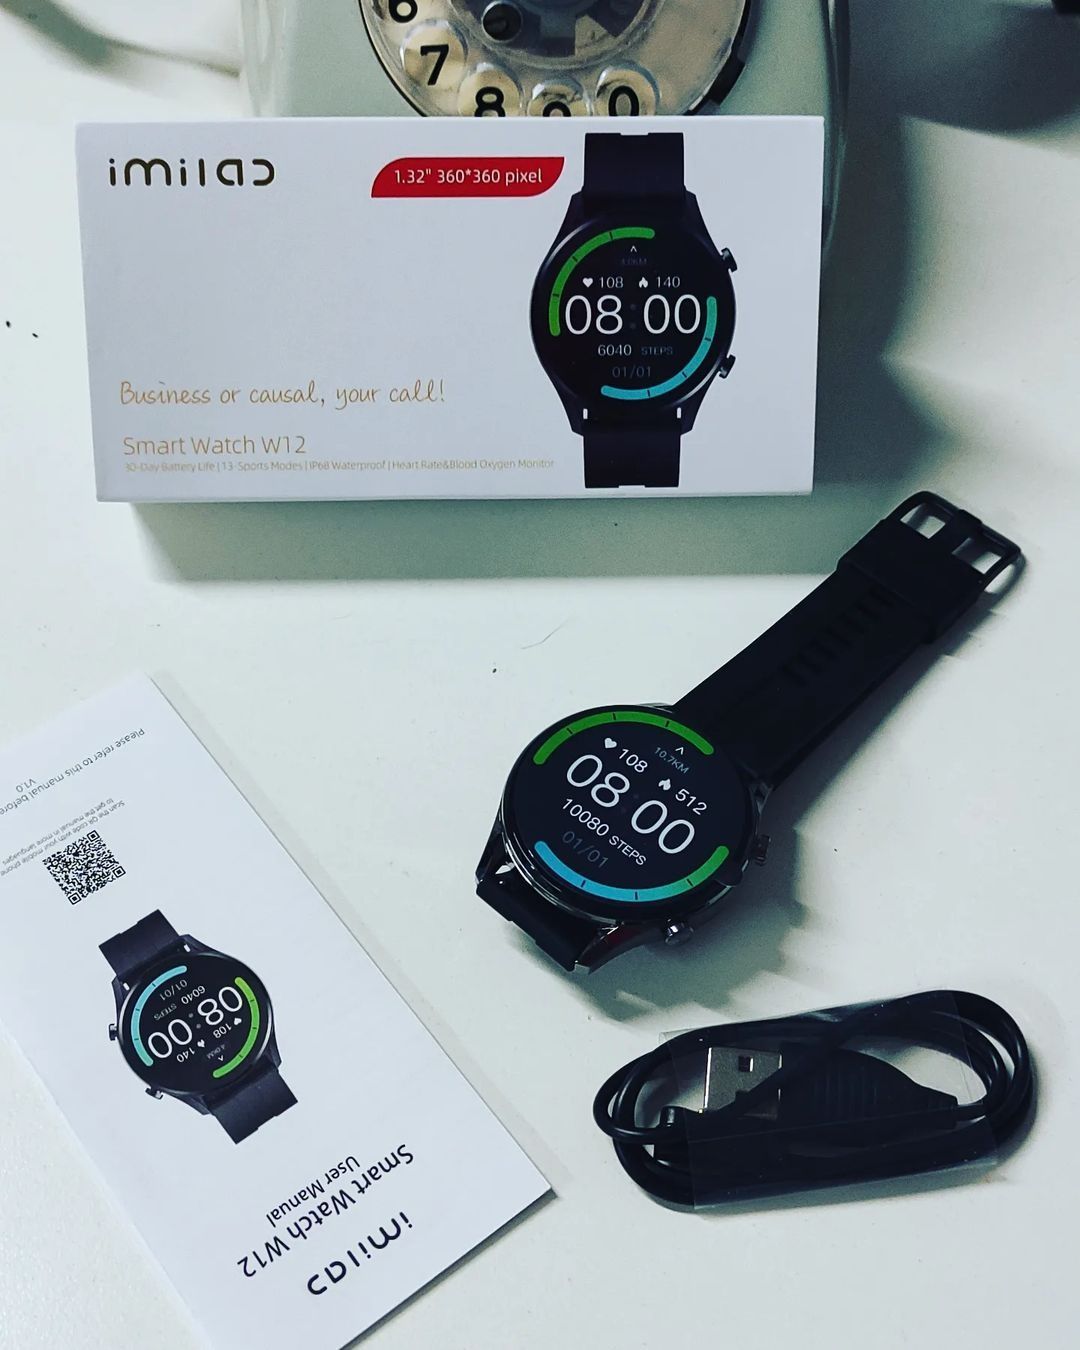 НОВЫЕ Смарт-Часы Xiaomi IMILAB iMi W12 Smart Watch Глобальная версия